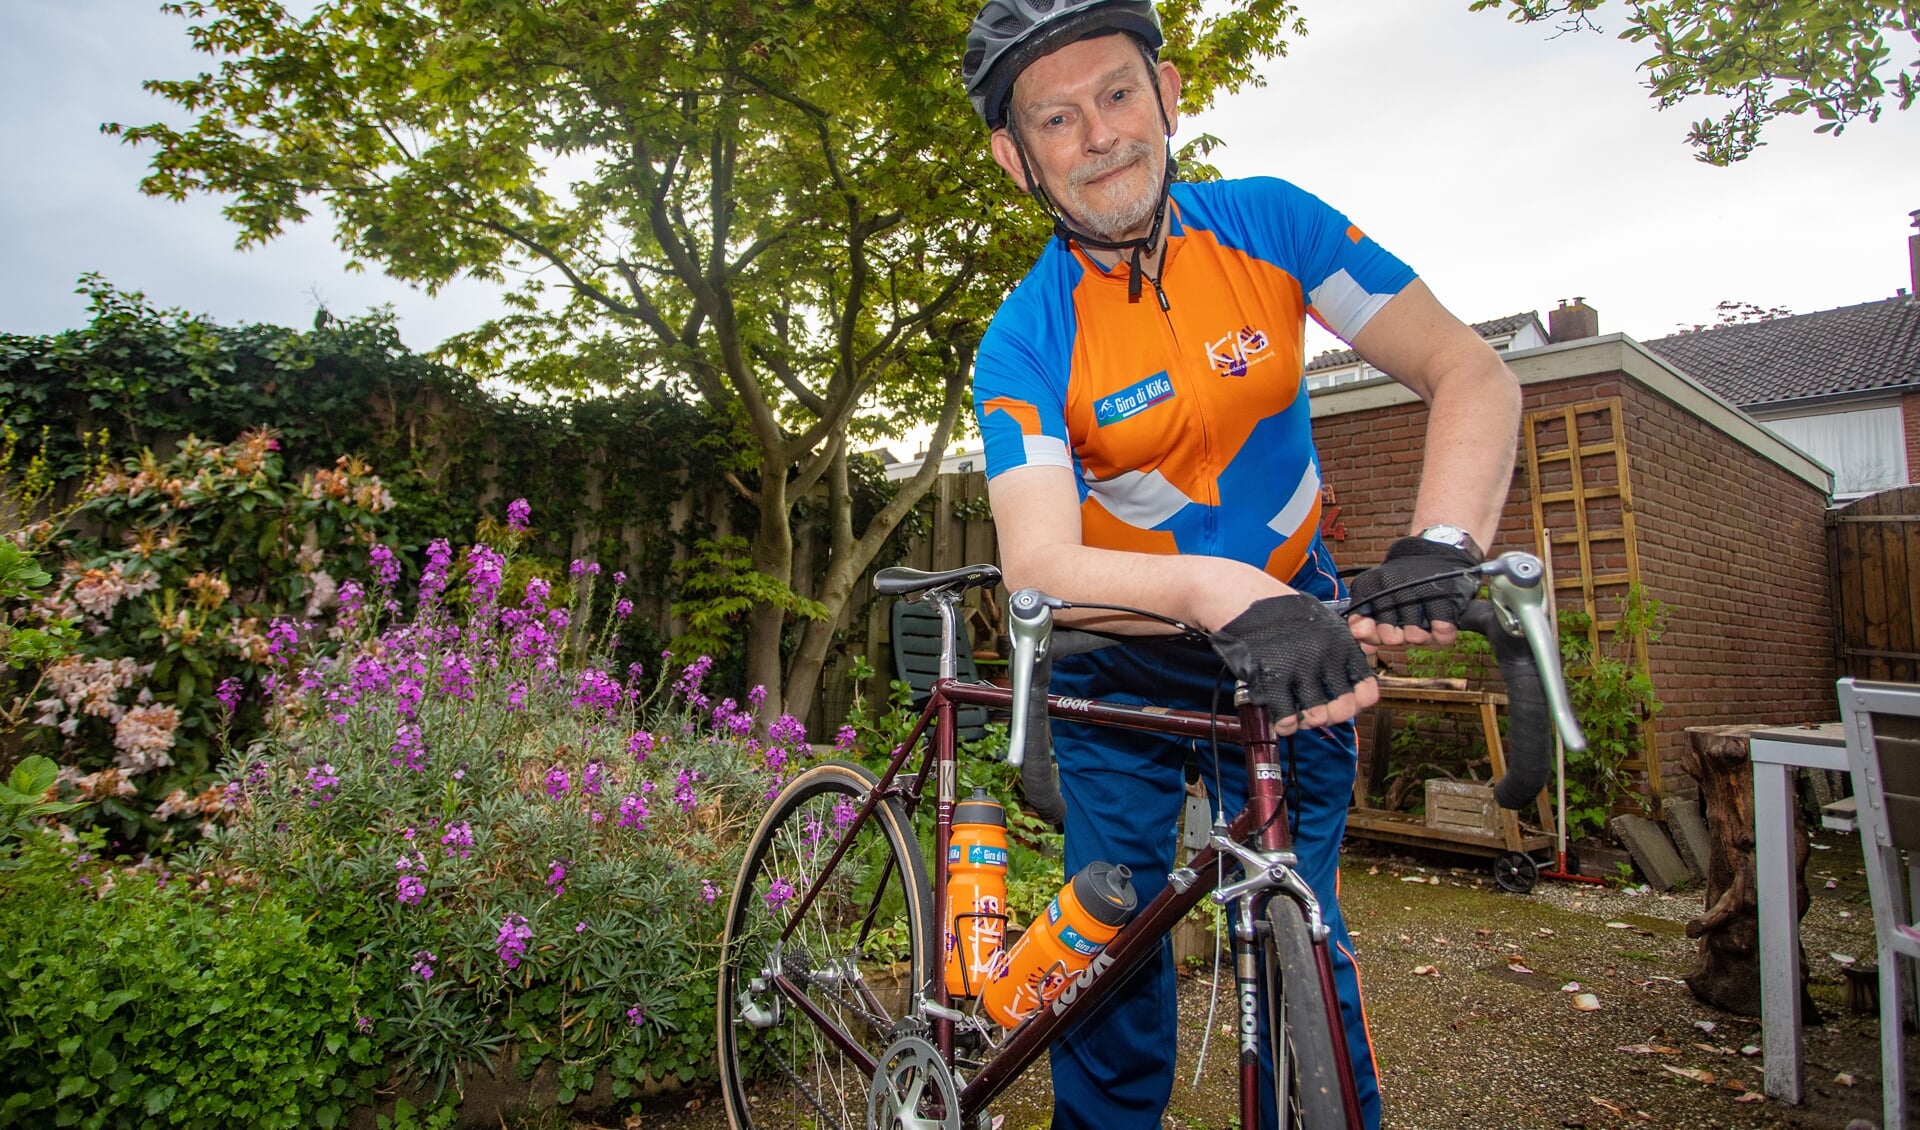 Joost de Kort fietst mee met Giro di Kika en is op zoek naar sponsoren. 